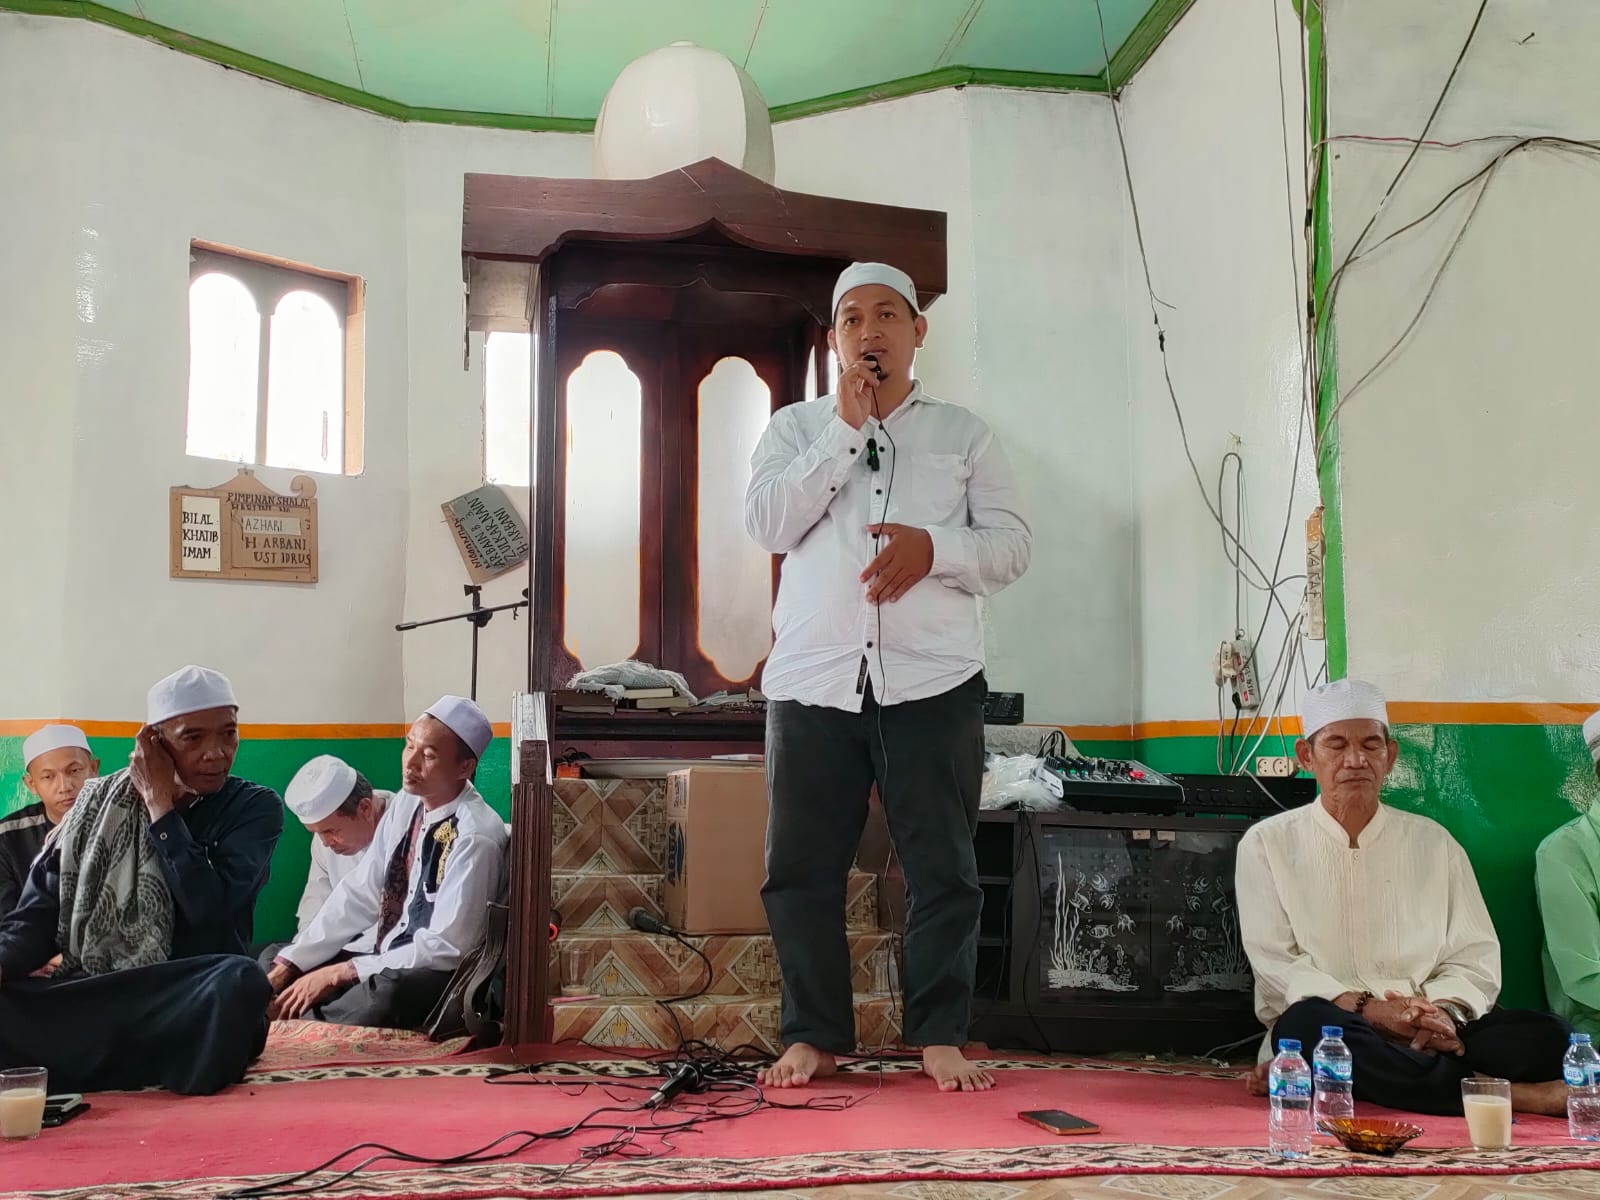 Peringatan Isra' Mi'raj 1445.H Masjid Al-Ihsan Parit 25 Dusun Karya Makmur